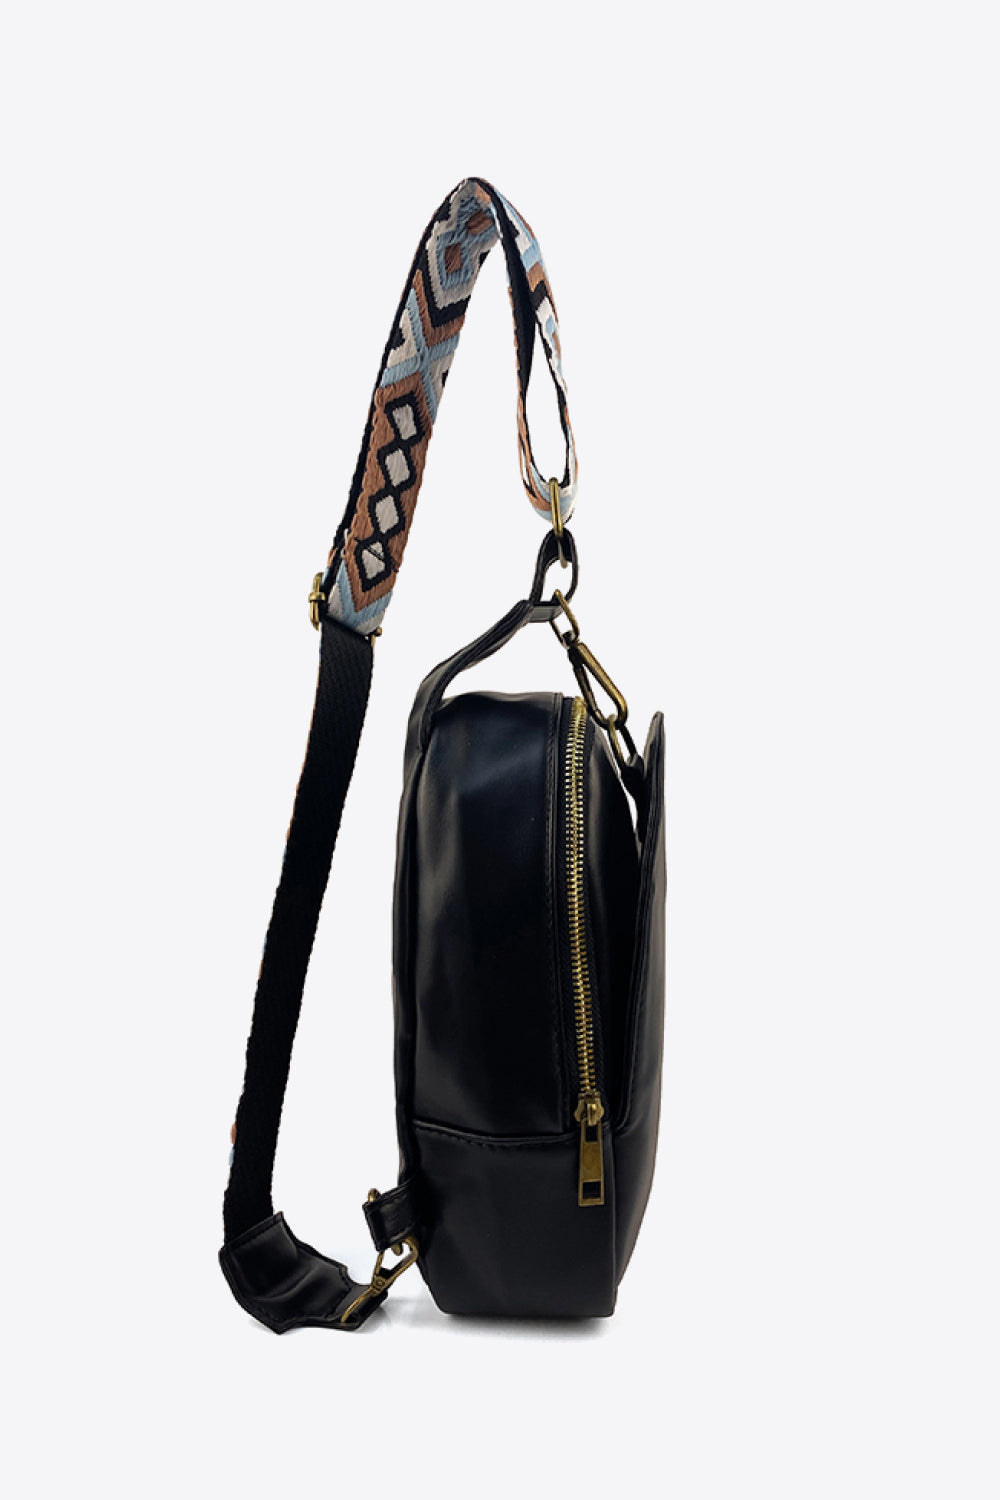 Adjustable Strap PU Leather Sling Bag - Handbag - FITGGINS